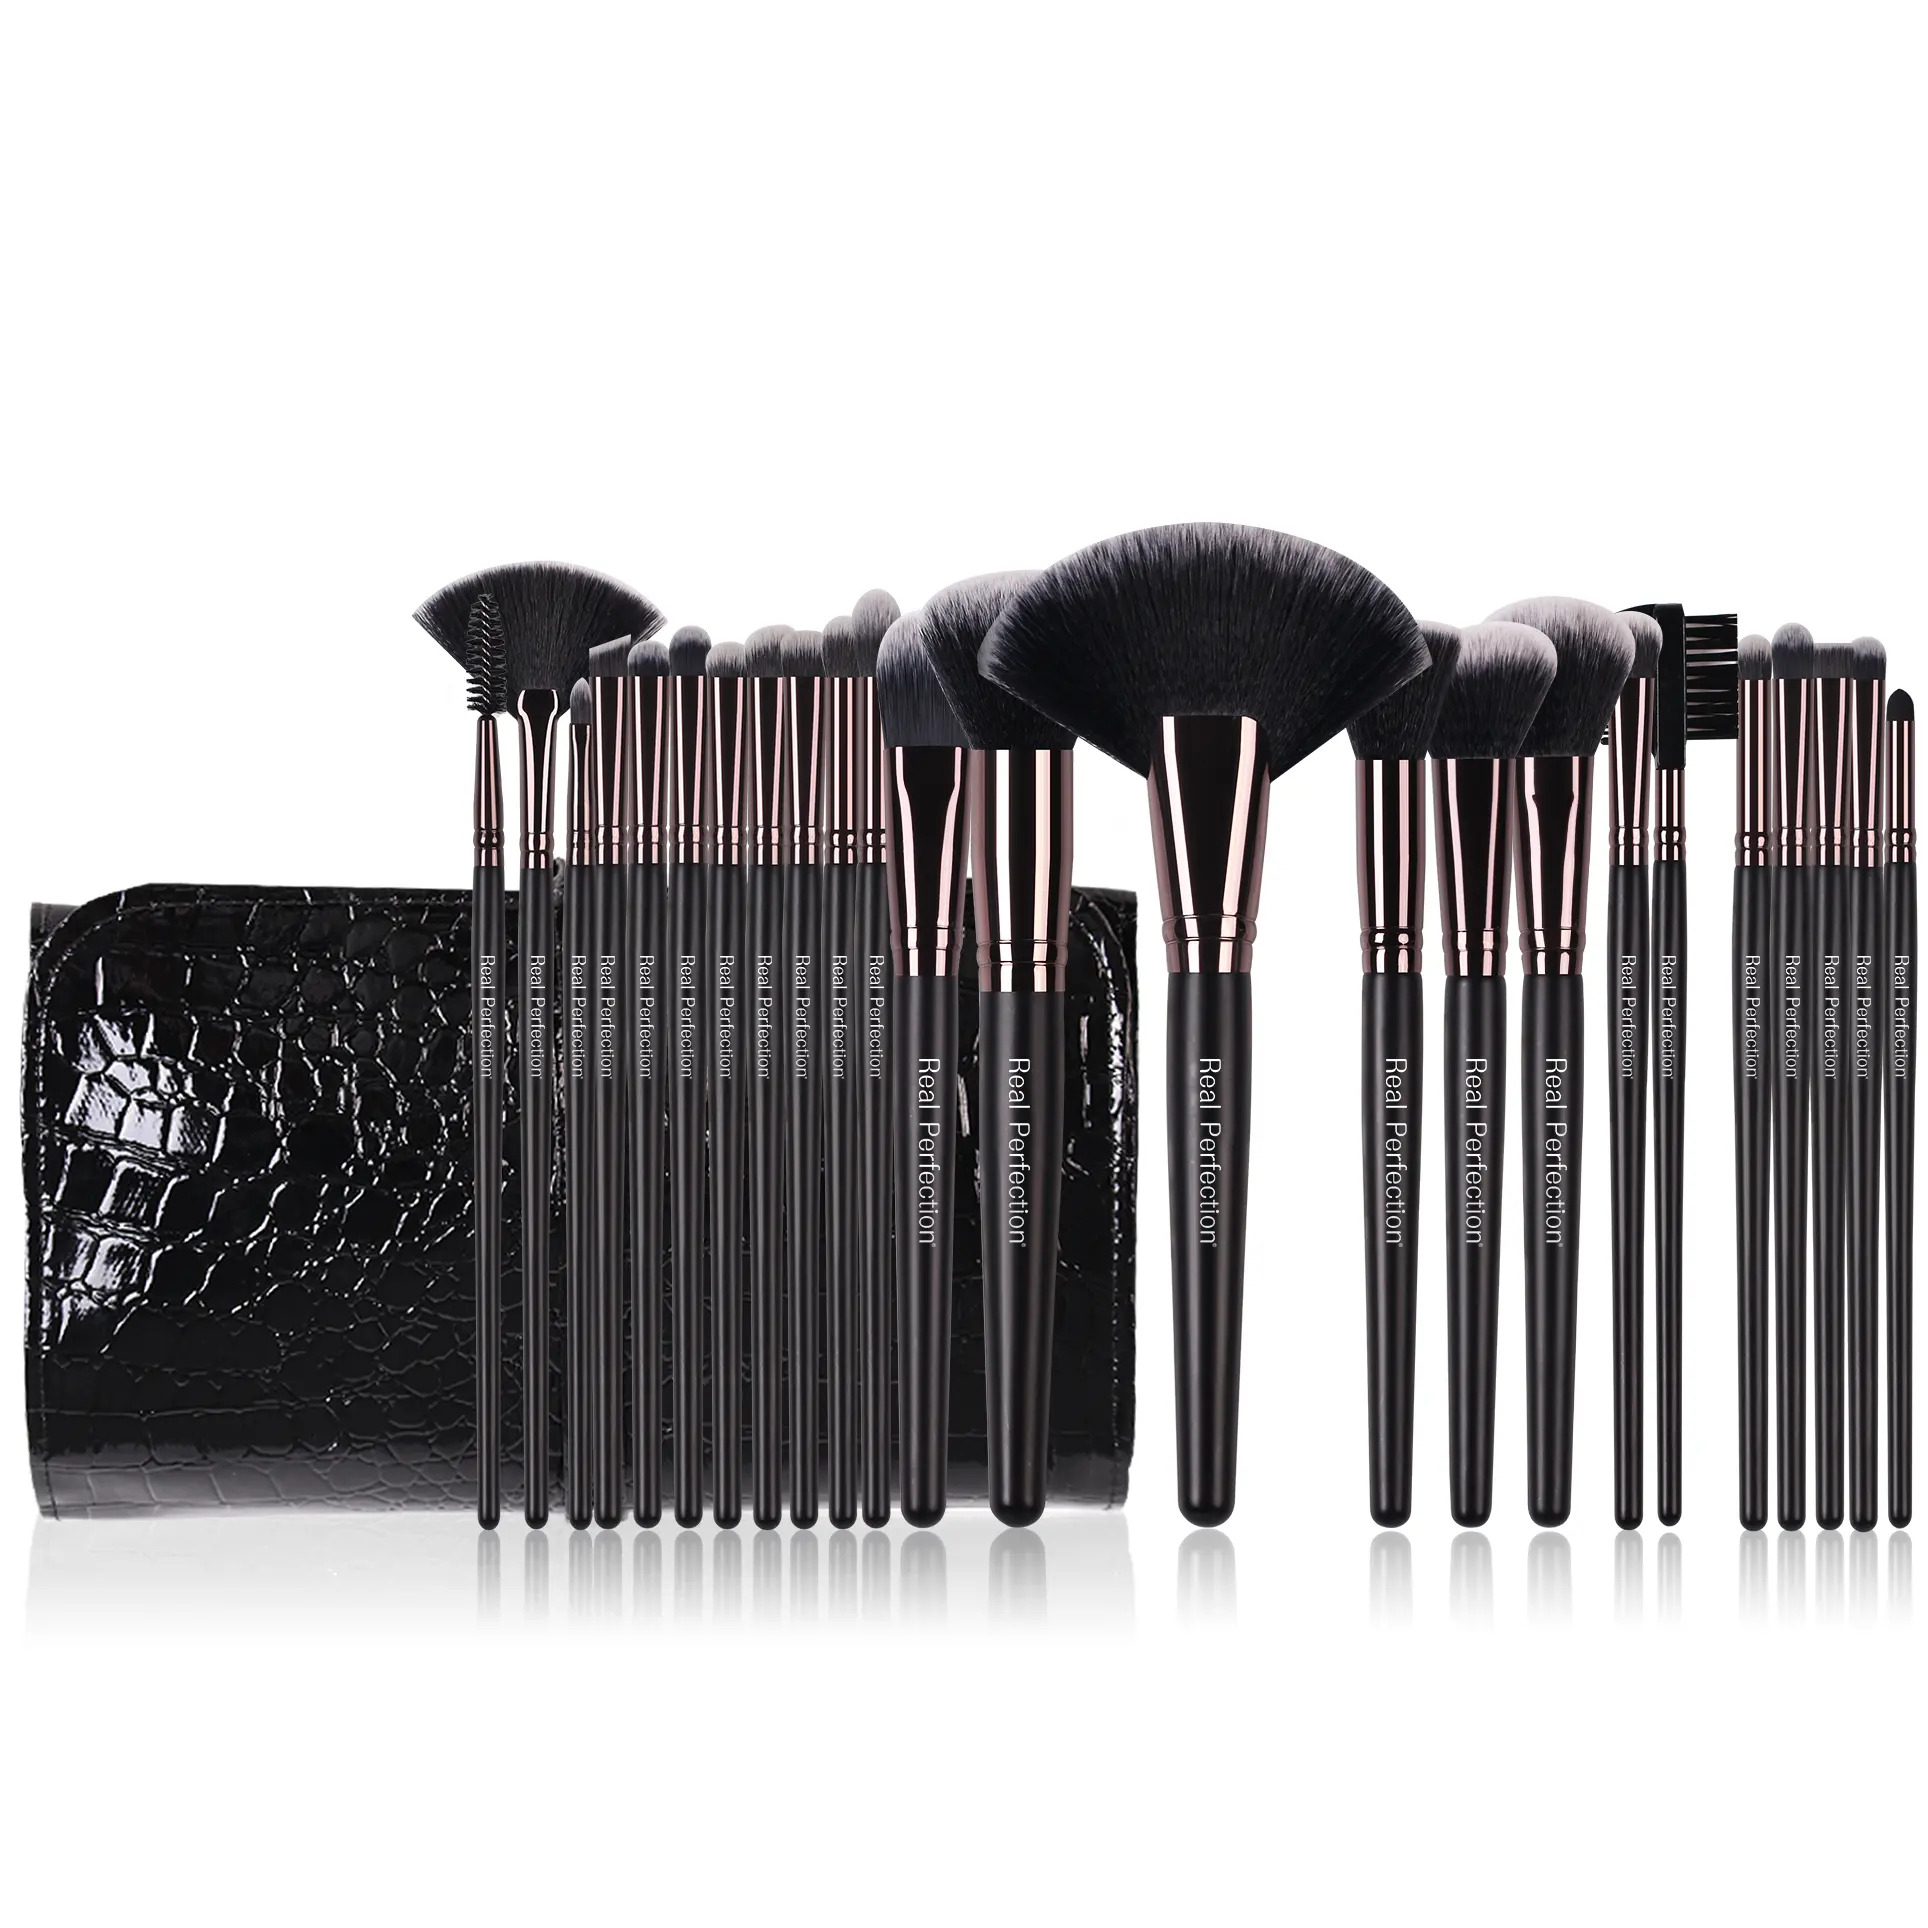 RP Hochwertige niedrige Kosten einzelne schwarze Make-up-Pinsel professionelle individualisierte Eigenmarke Make-up-Pinsel-Set